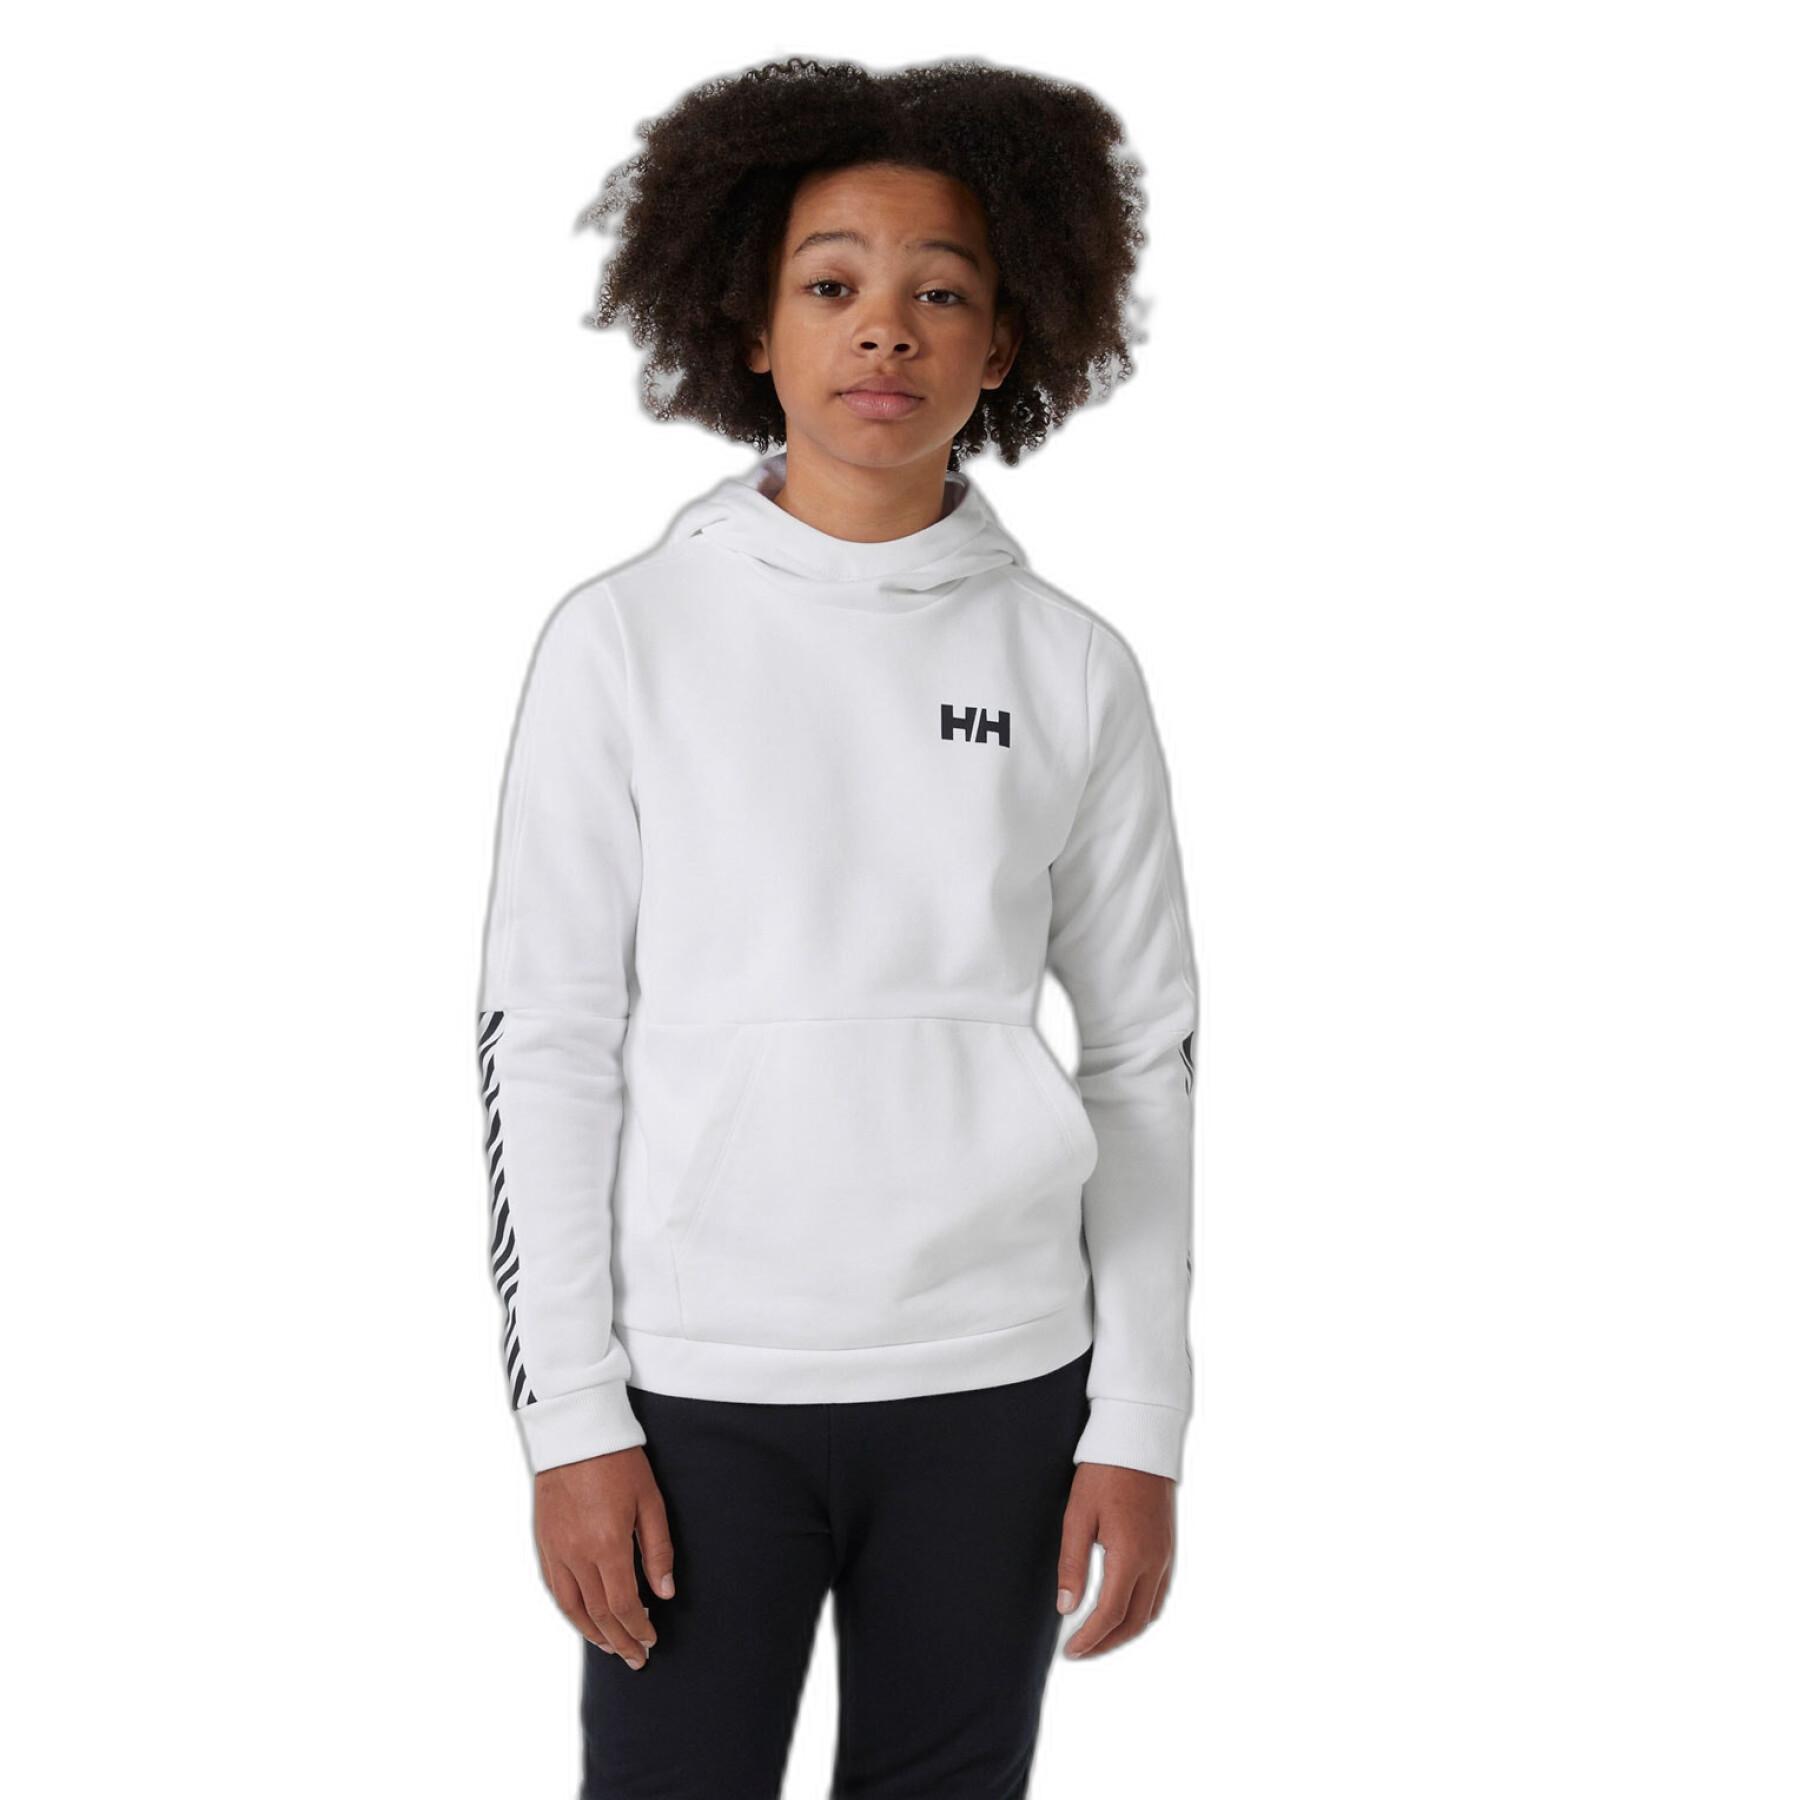 Aktiv-Kapuzen-Sweatshirt für Mädchen Helly Hansen